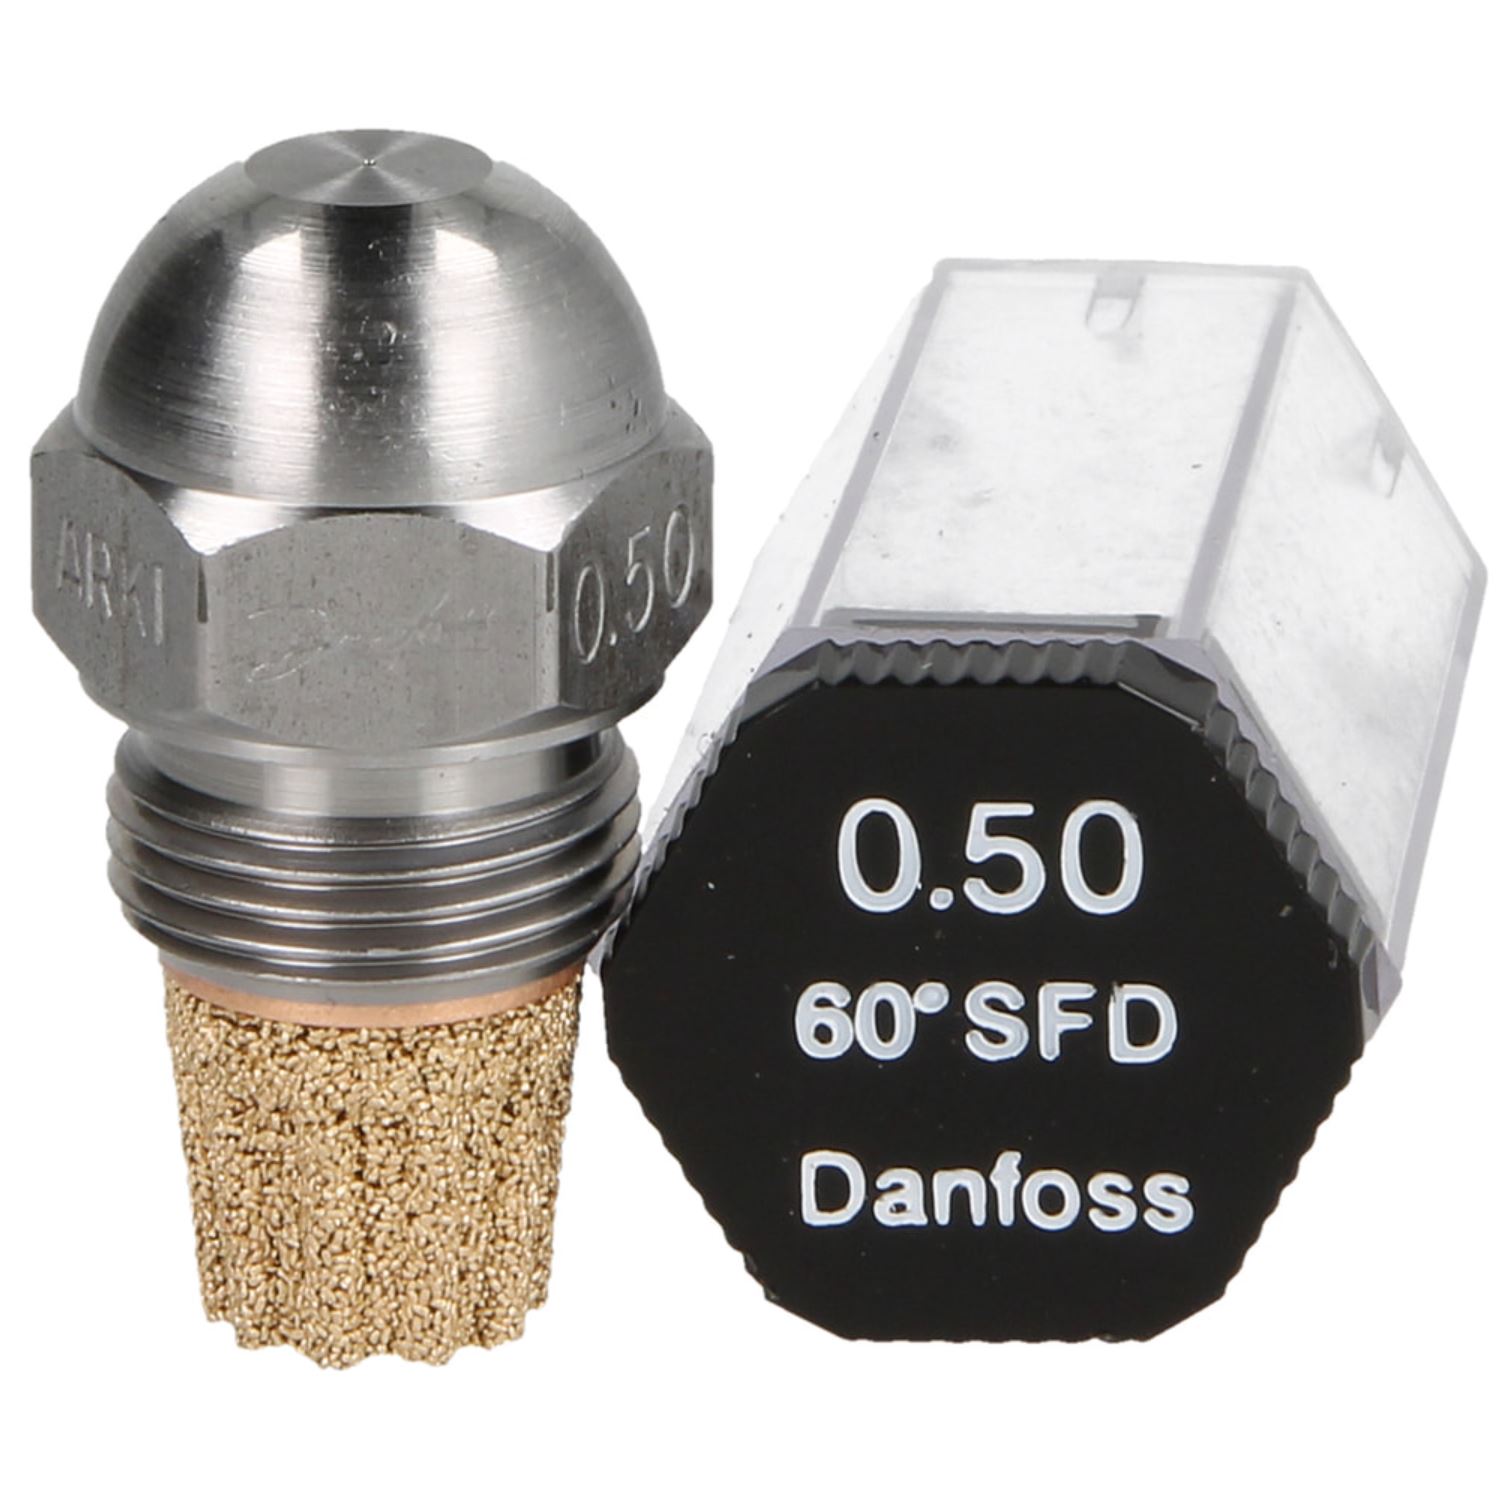 Danfoss-Öldüse 0,50 60°SF-D